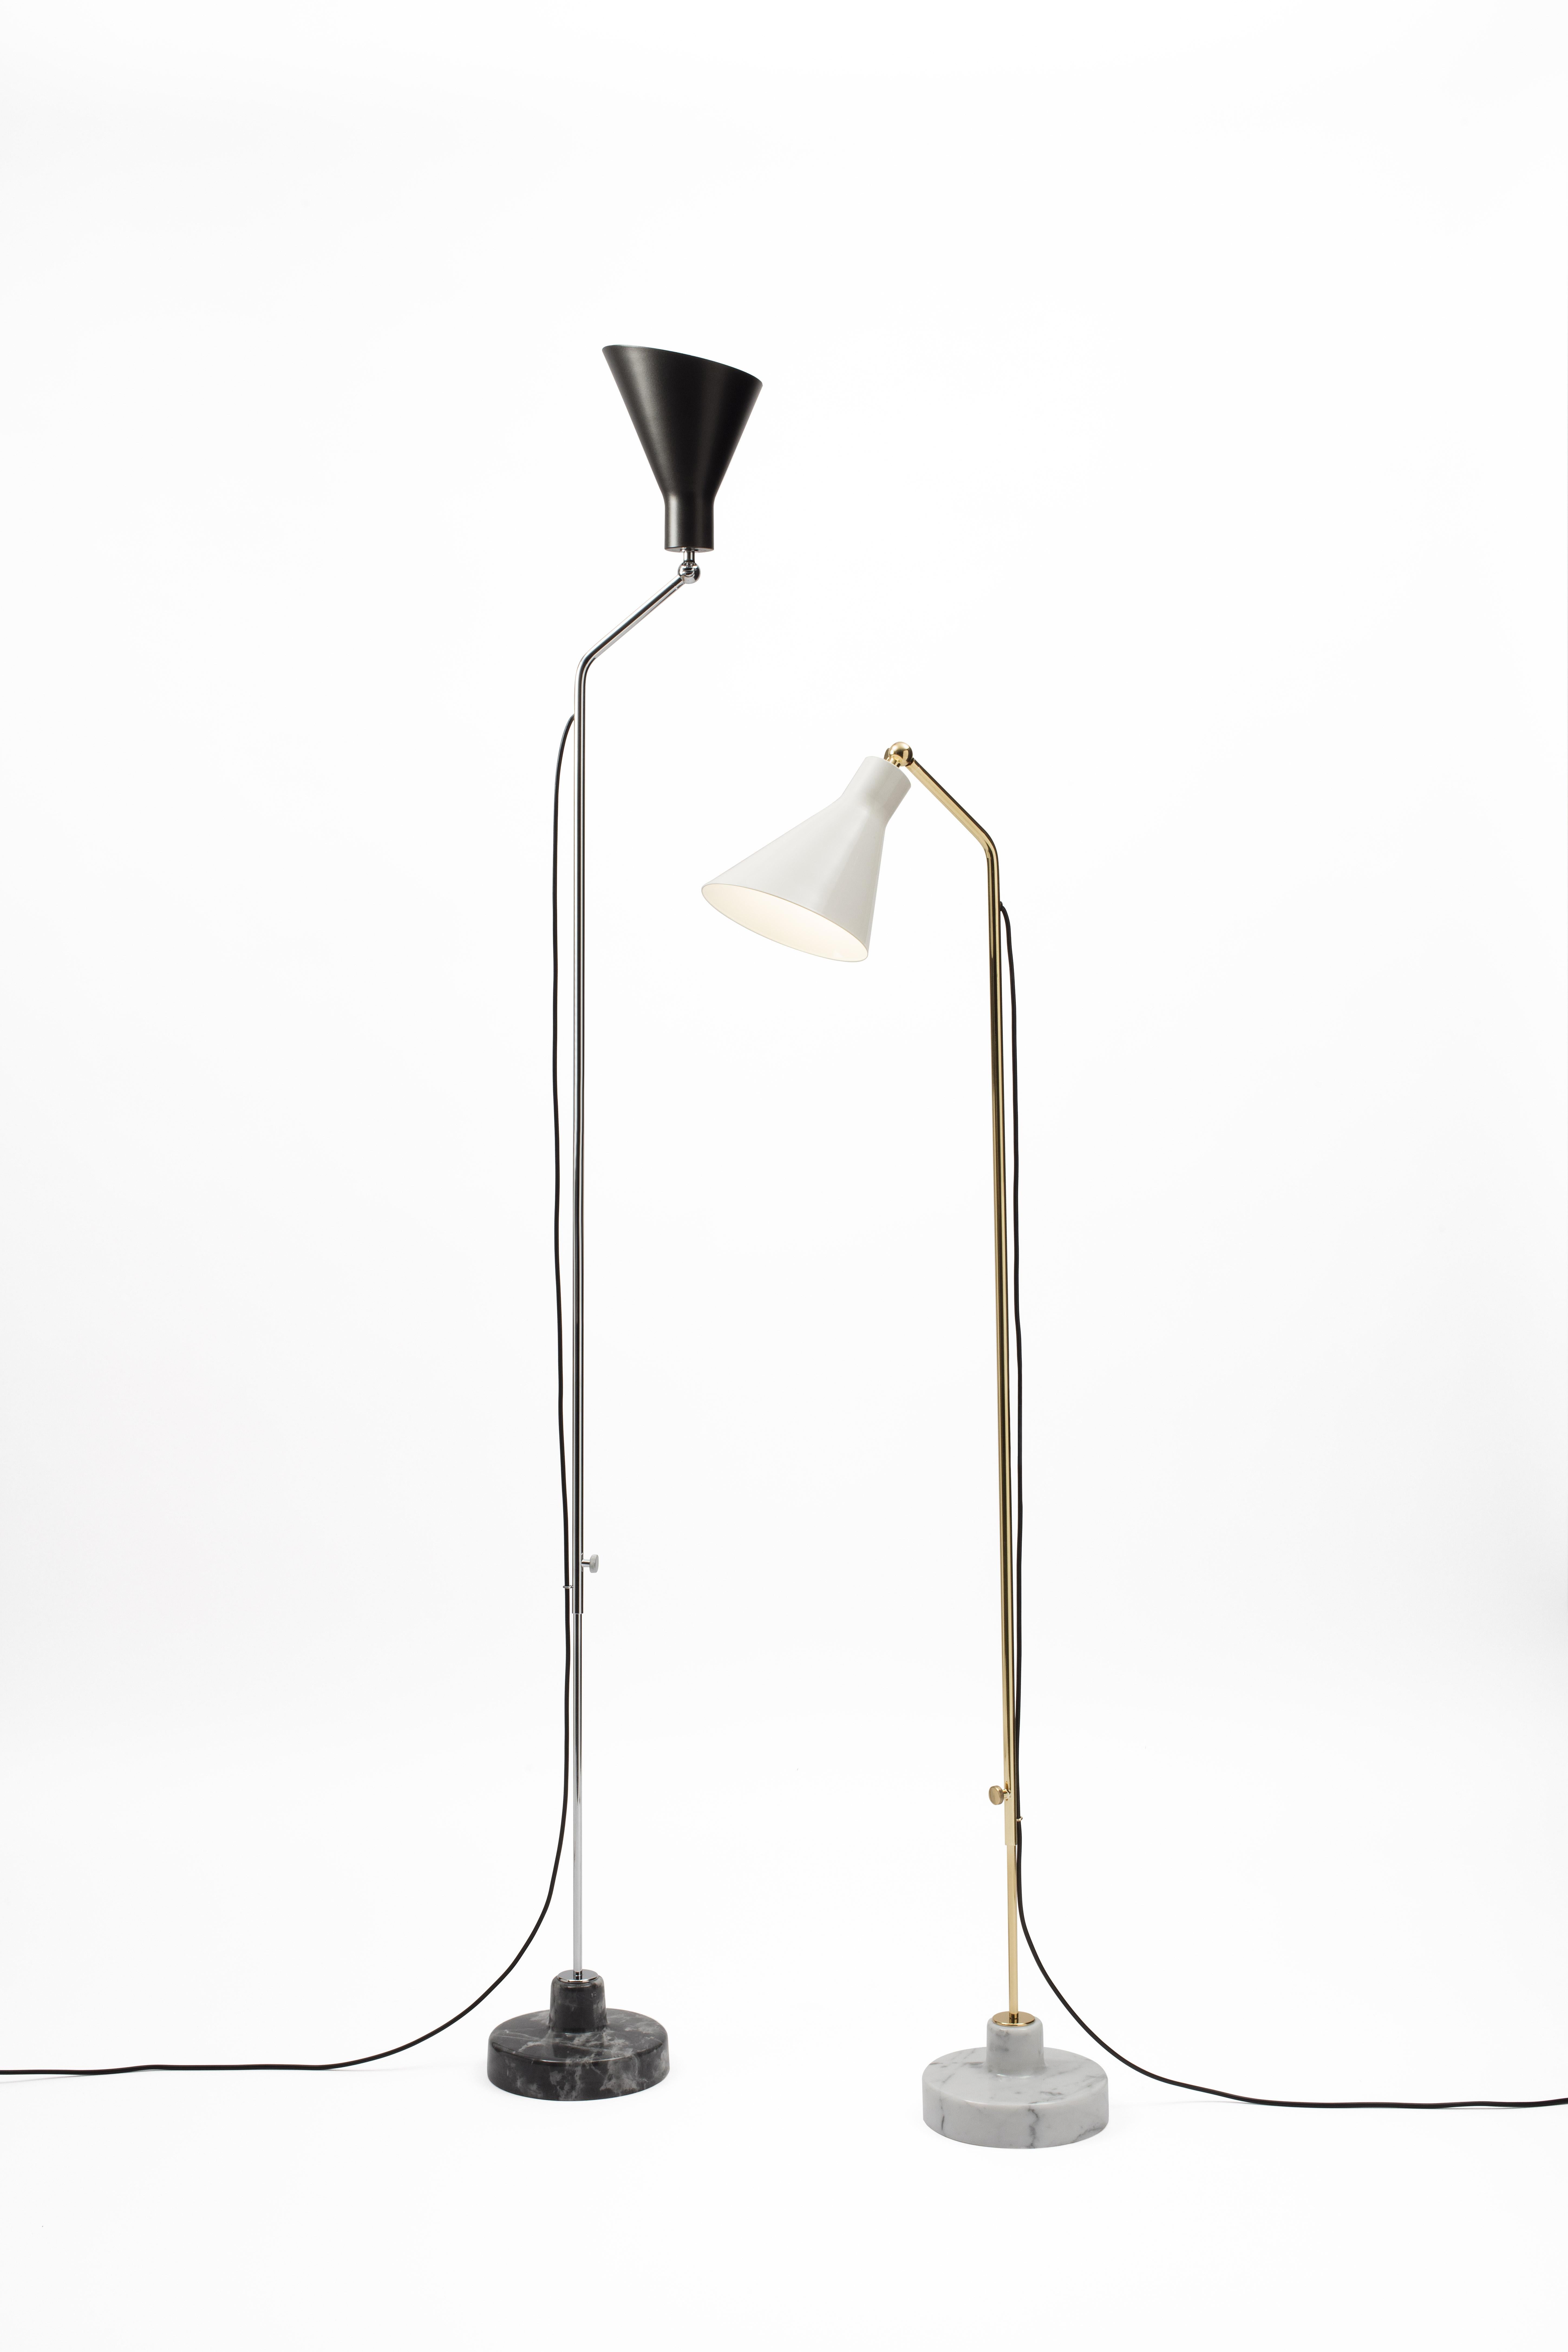 Italian Ignazio Gardella Alzabile Floor Lamp in Brass, Metal and Marble for Tato Italia For Sale